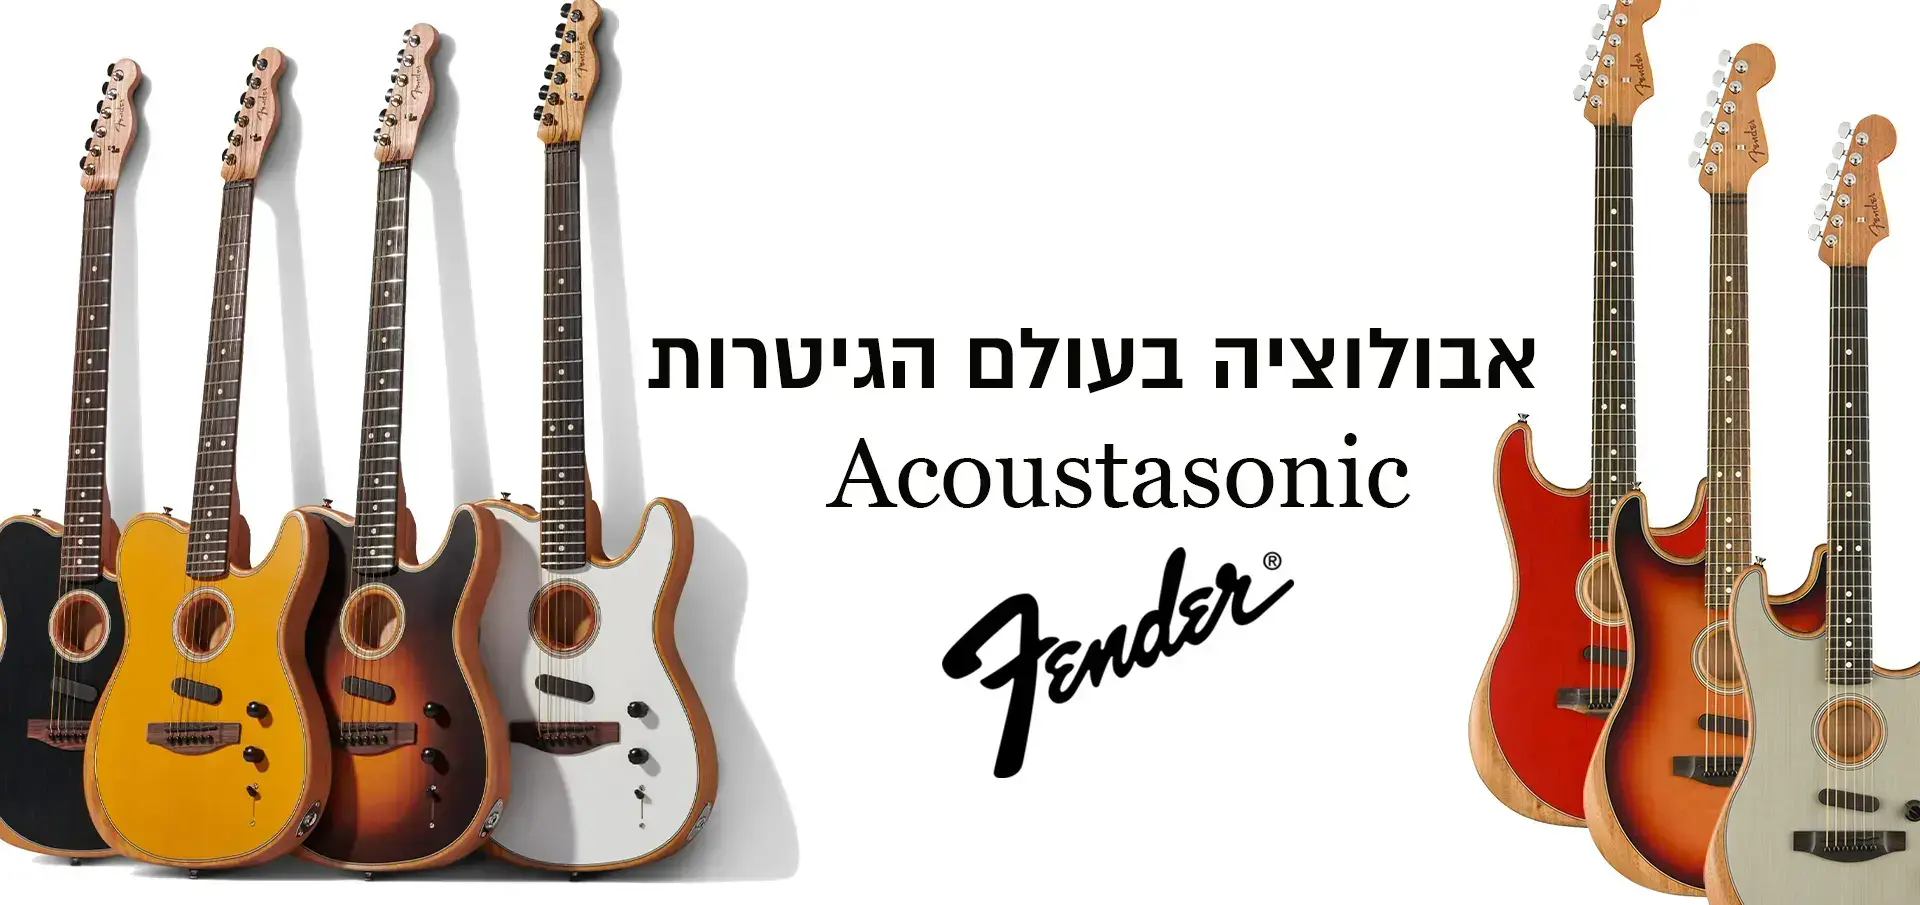 Fender Acoustasonic